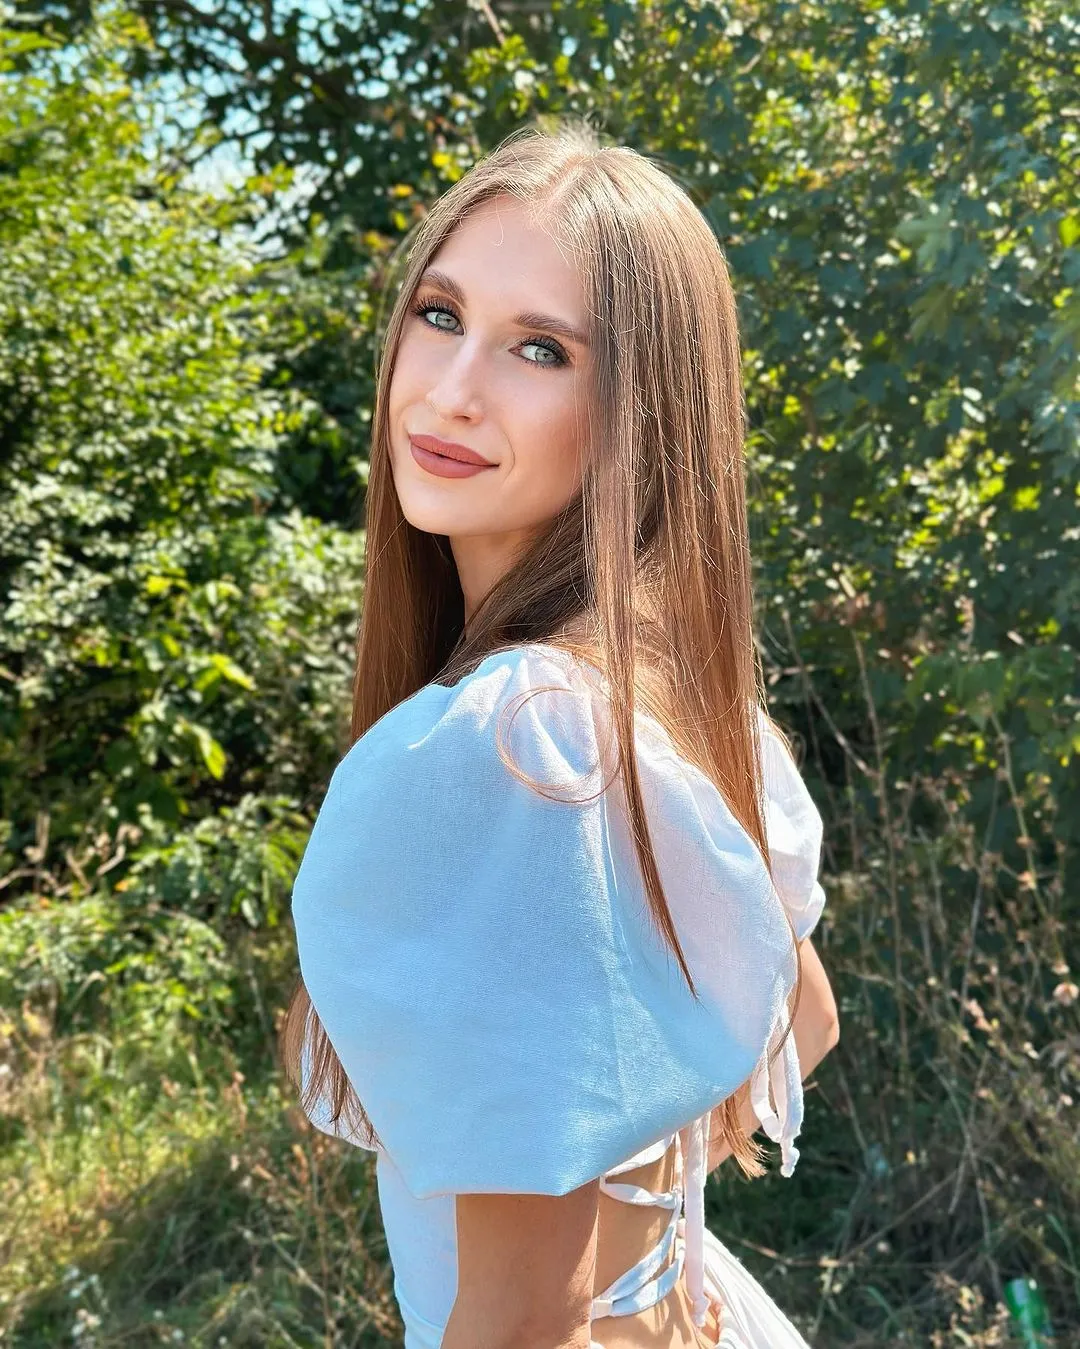 Olga russian brides profiles